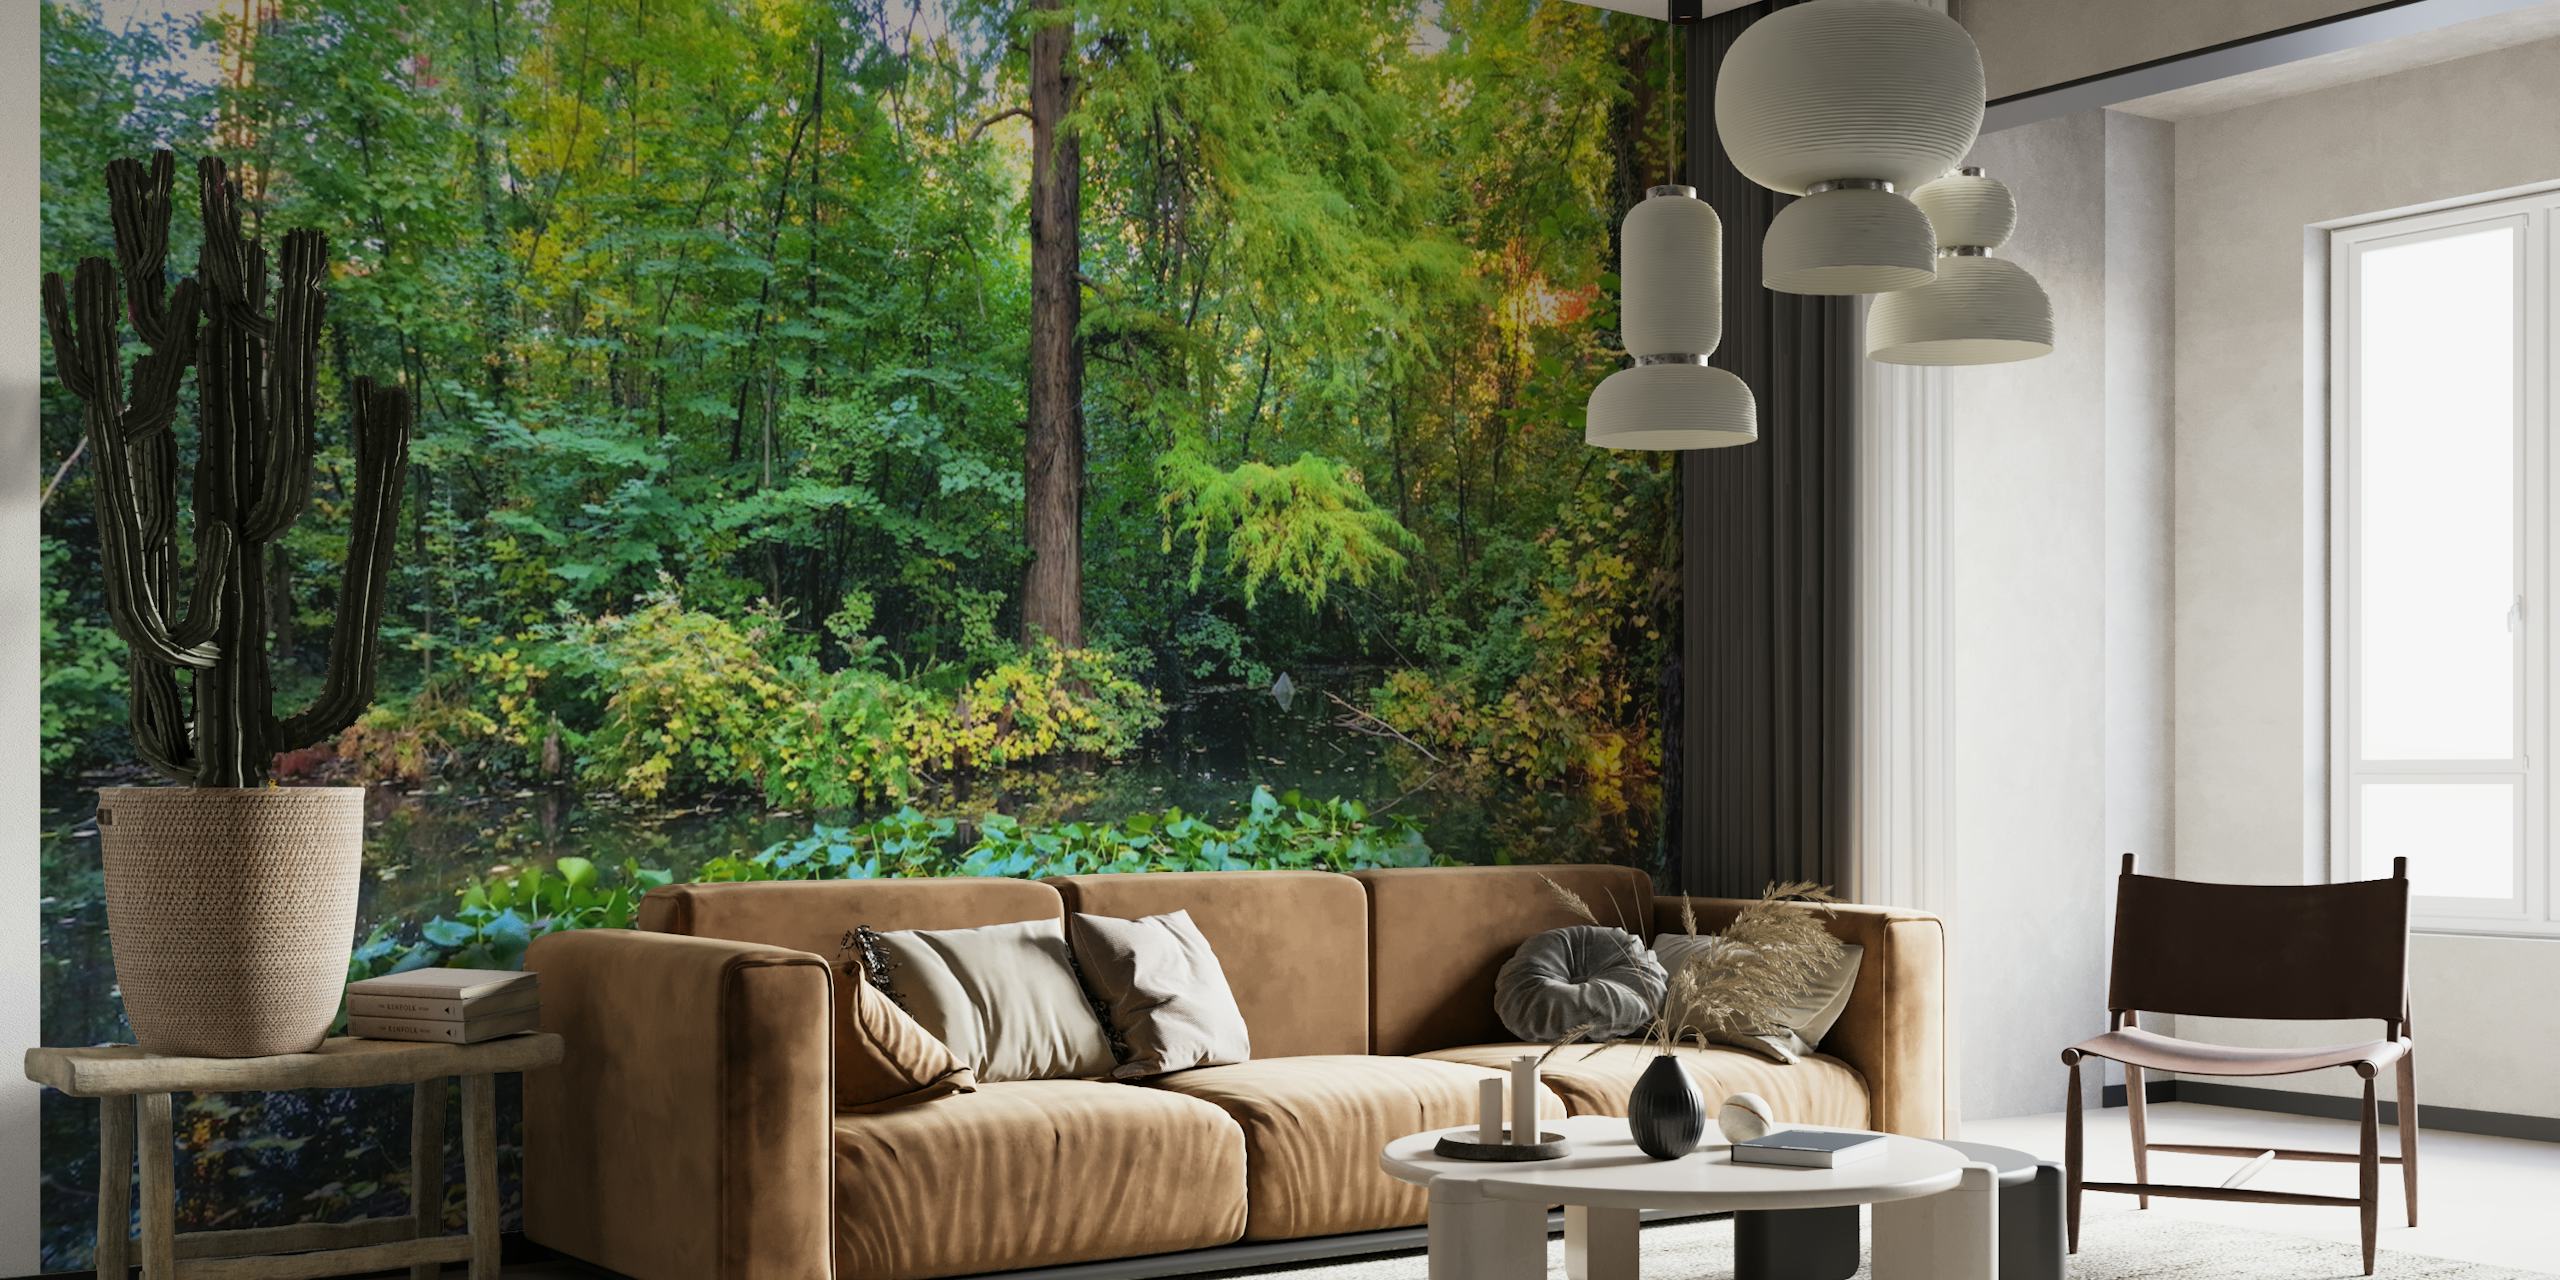 Fotomural vinílico de parede exuberante com cena de floresta com folhagem ensolarada e vegetação verdejante